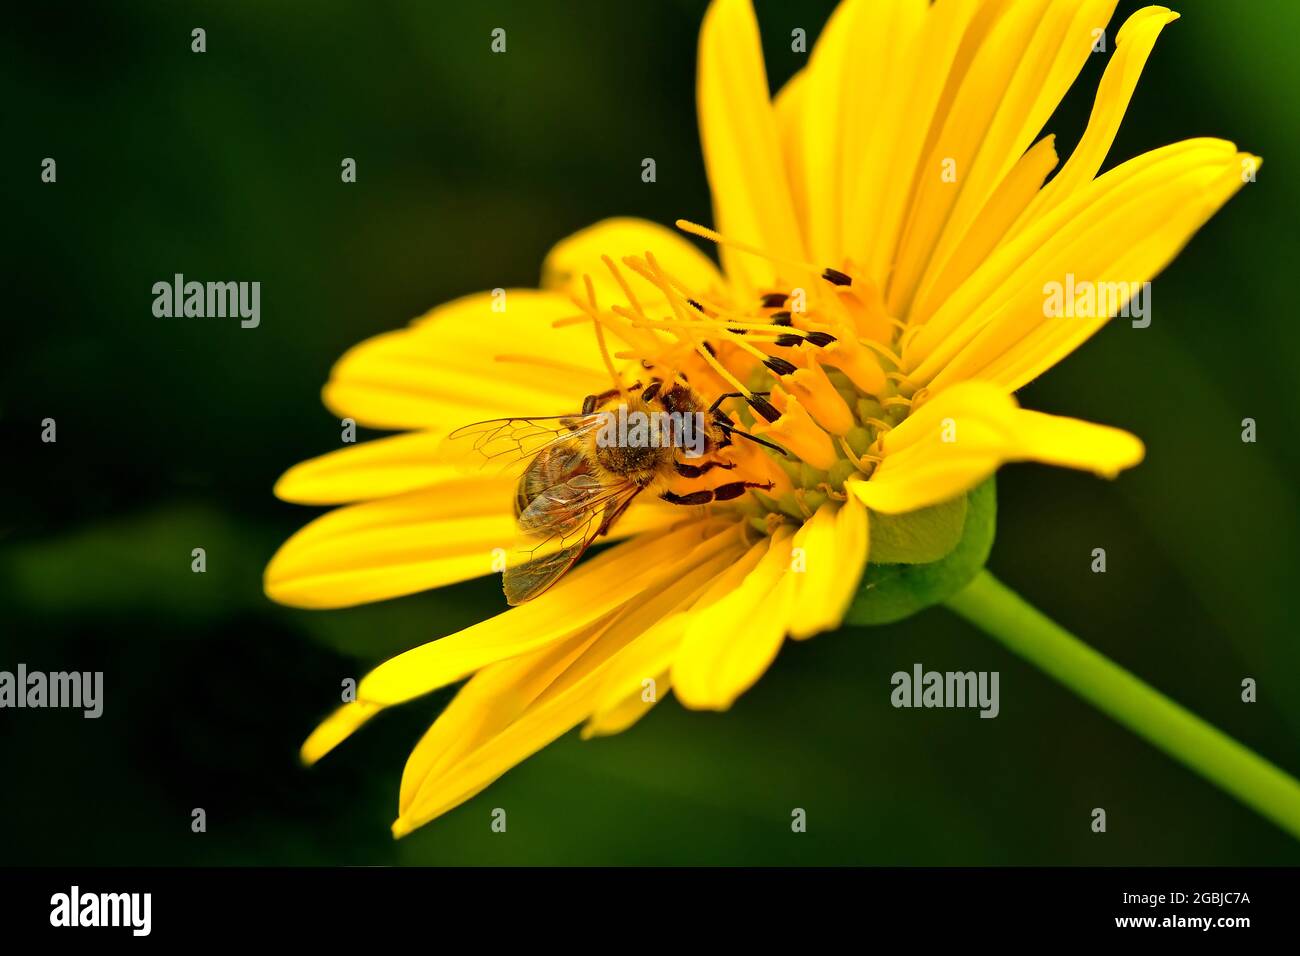 Fiore della bussola immagini e fotografie stock ad alta risoluzione - Alamy